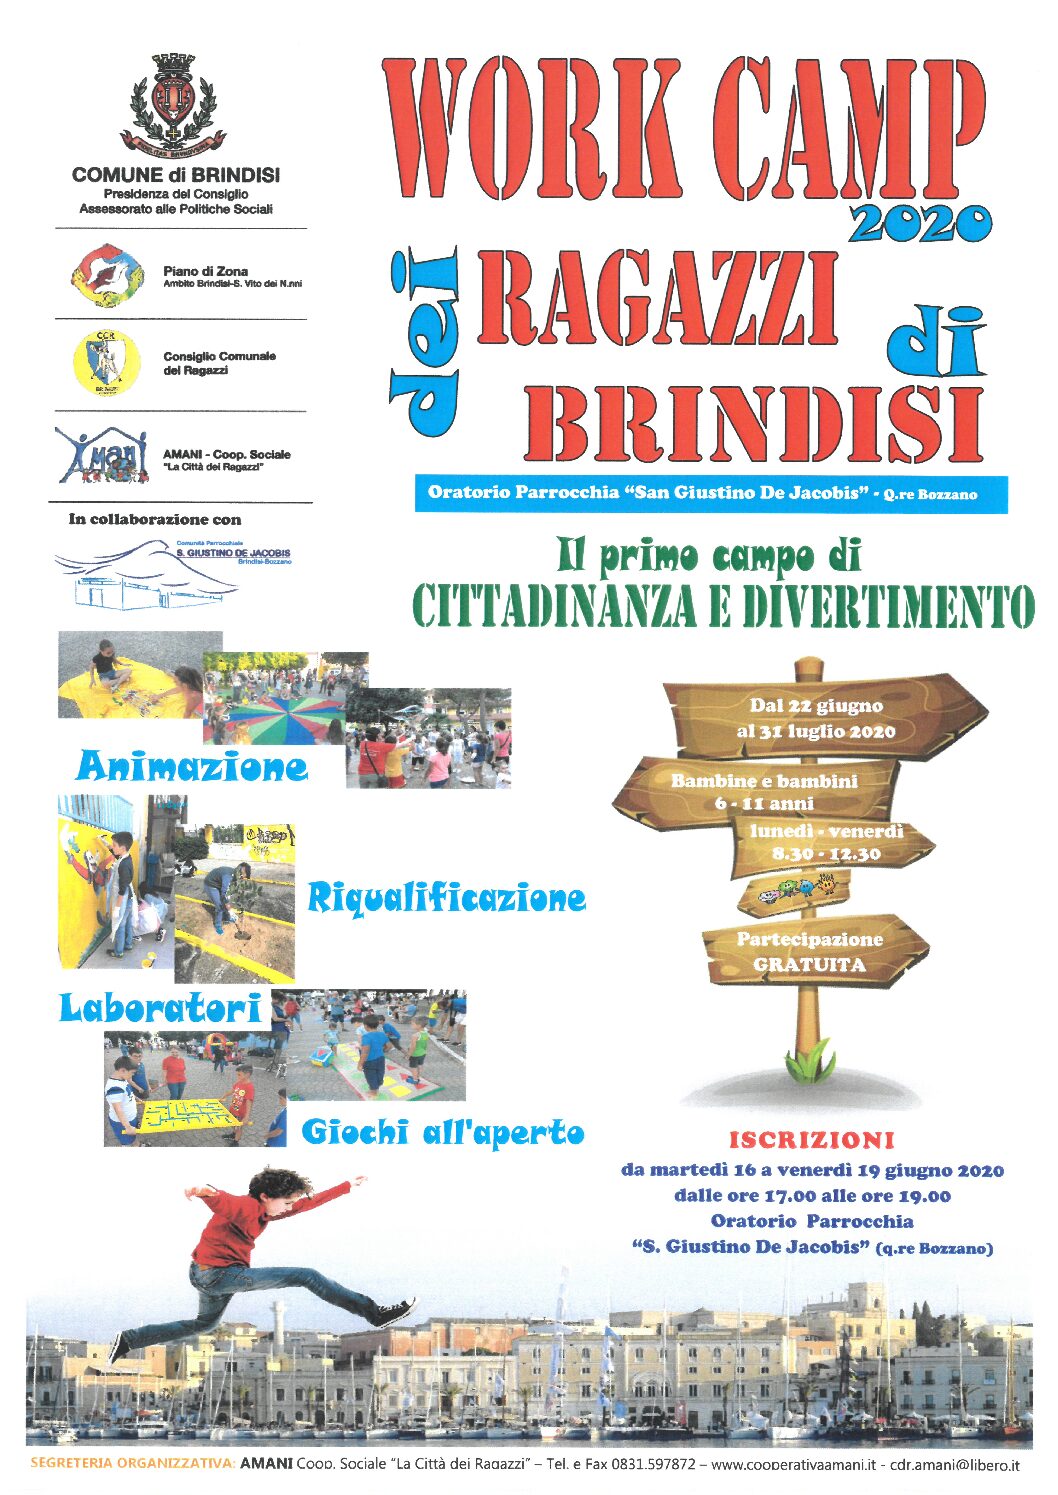 Work Camp 2020 dei Ragazzi di Brindisi!